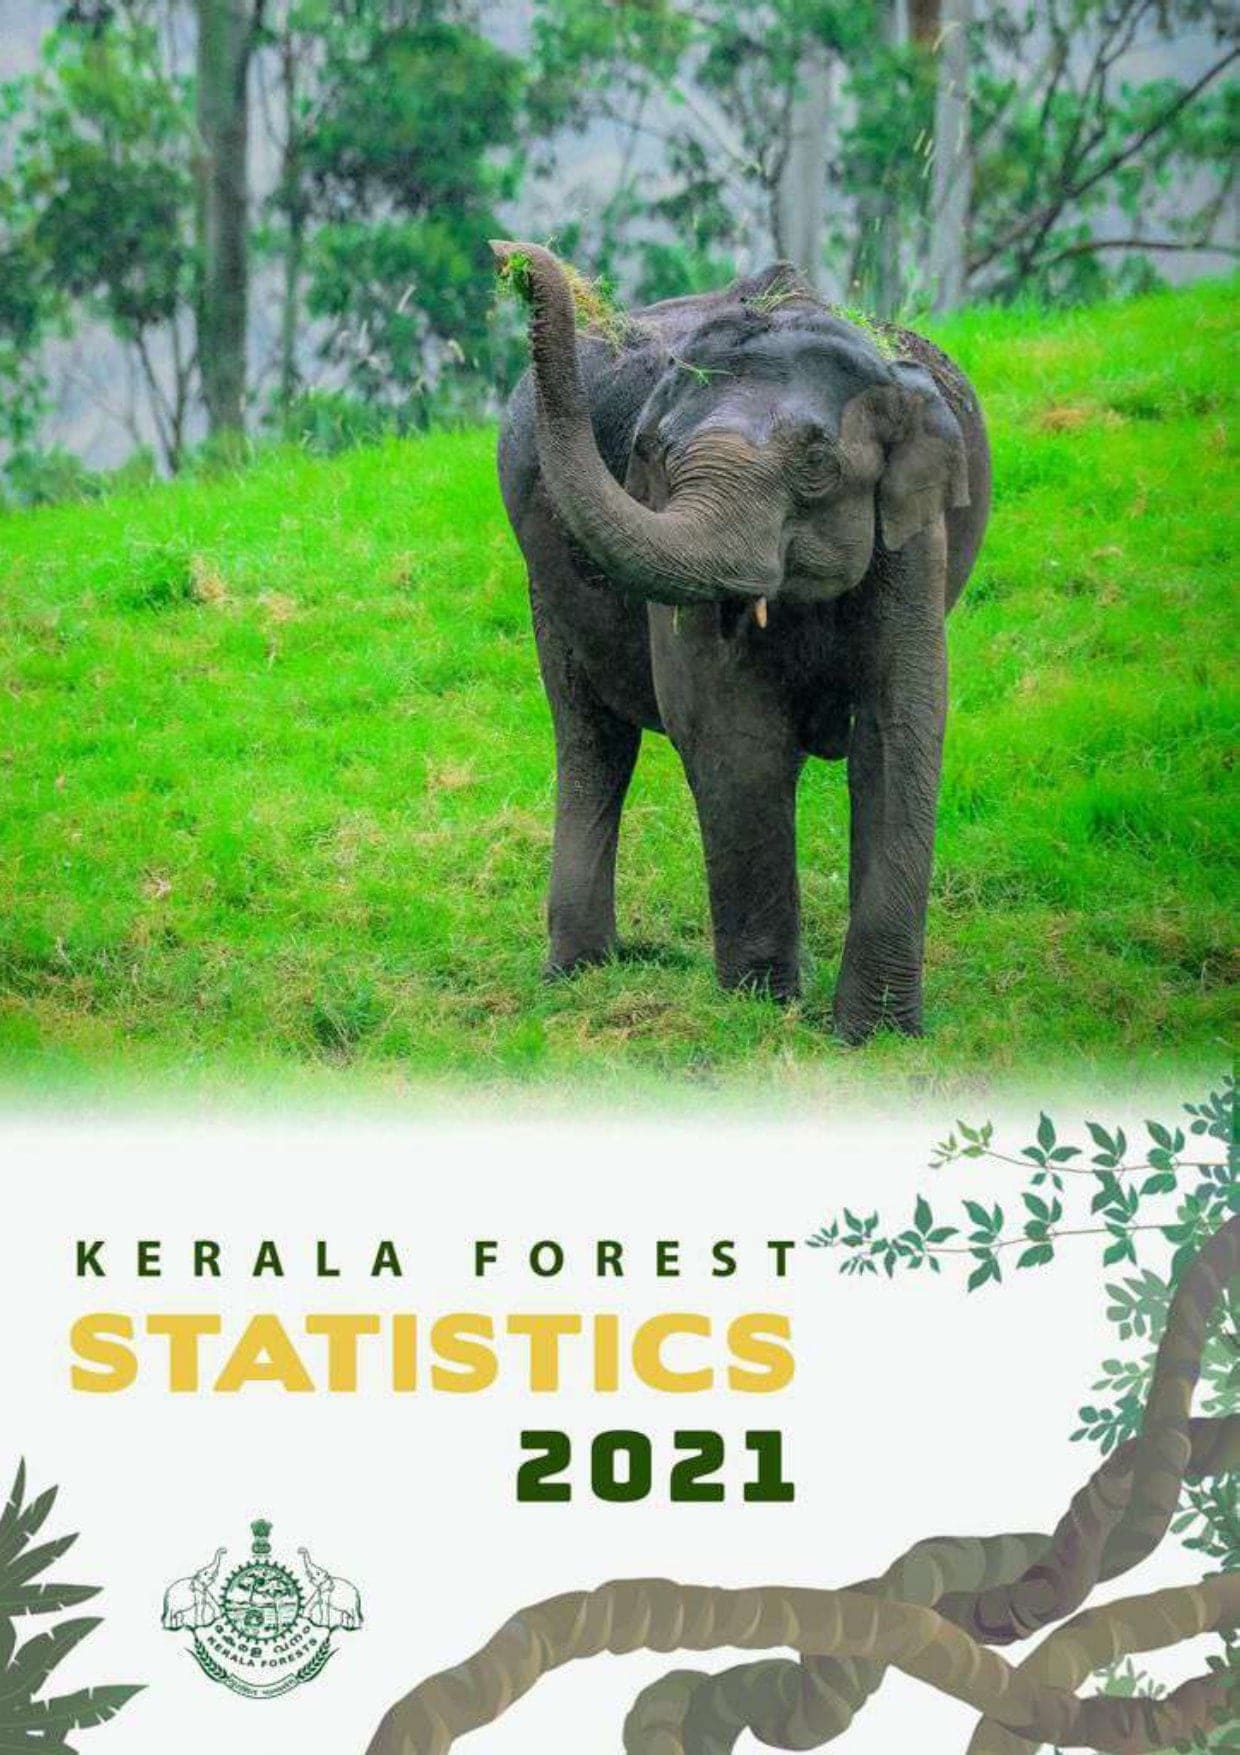 KERALA FOREST STATISTICS 2021